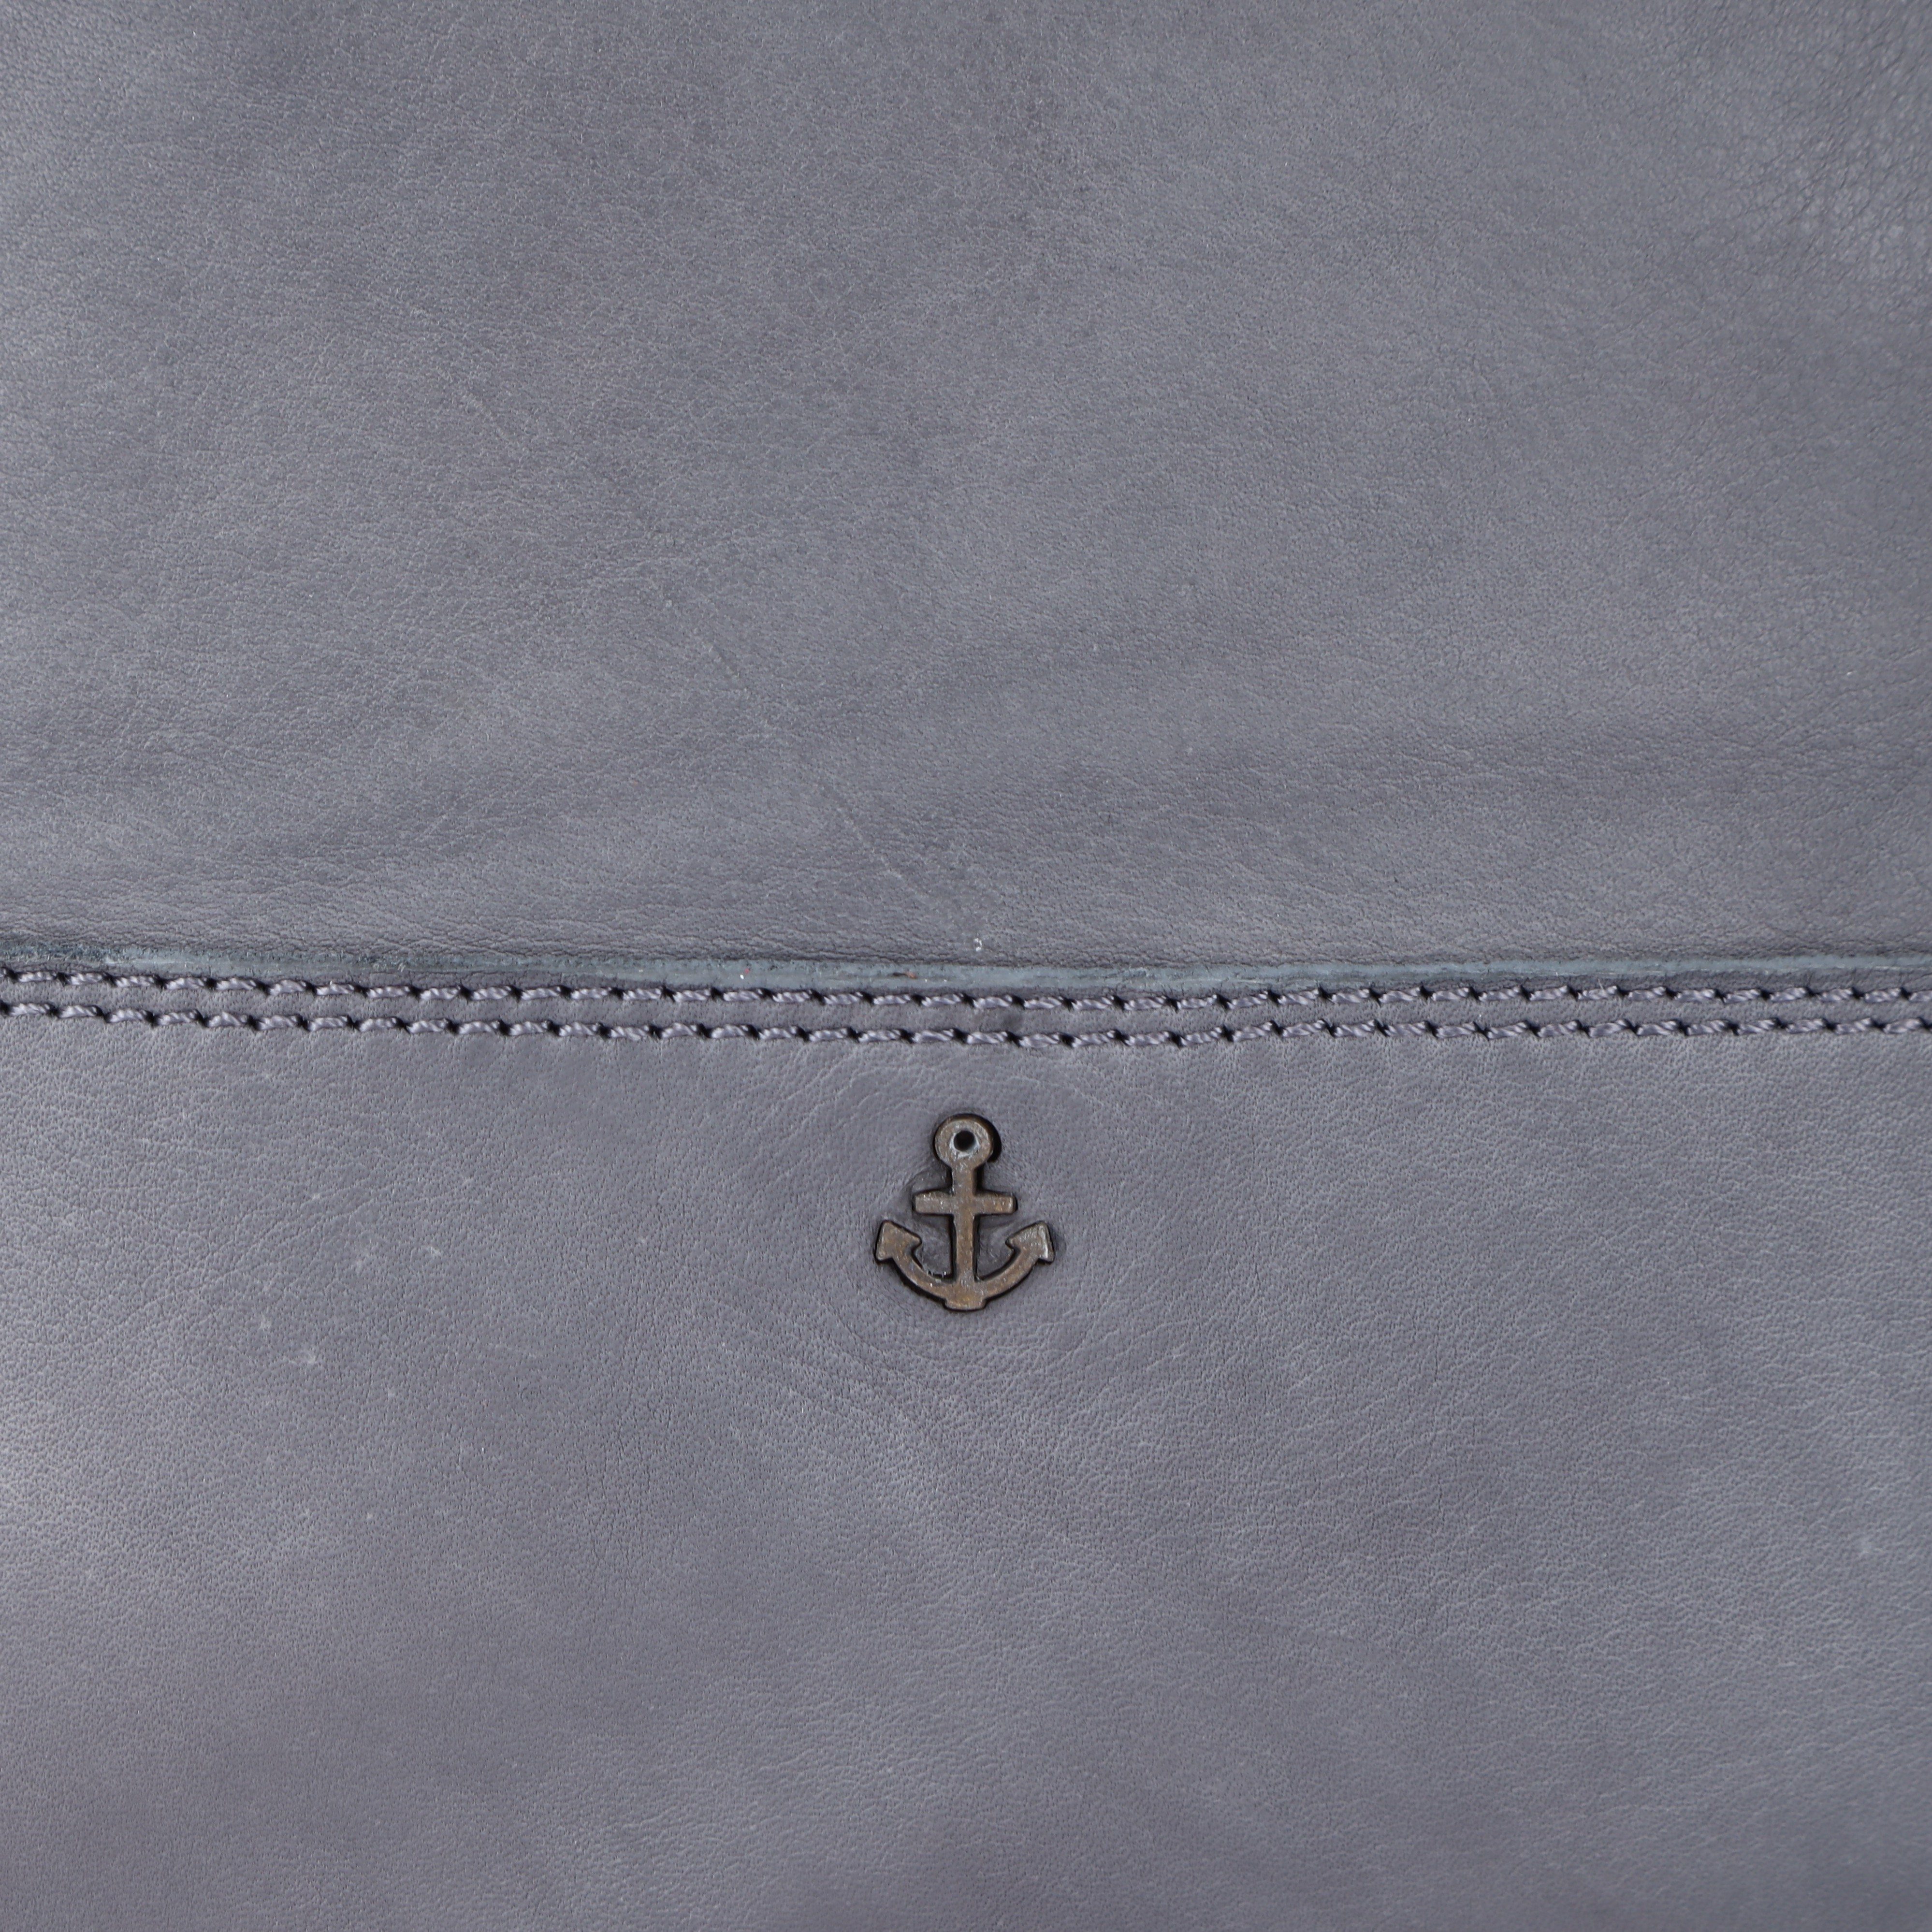 Schmuckanhänger aus 2nd Meghan, Cityrucksack mit dolphin grey typischen Leder Marken-Anker-Label und HARBOUR